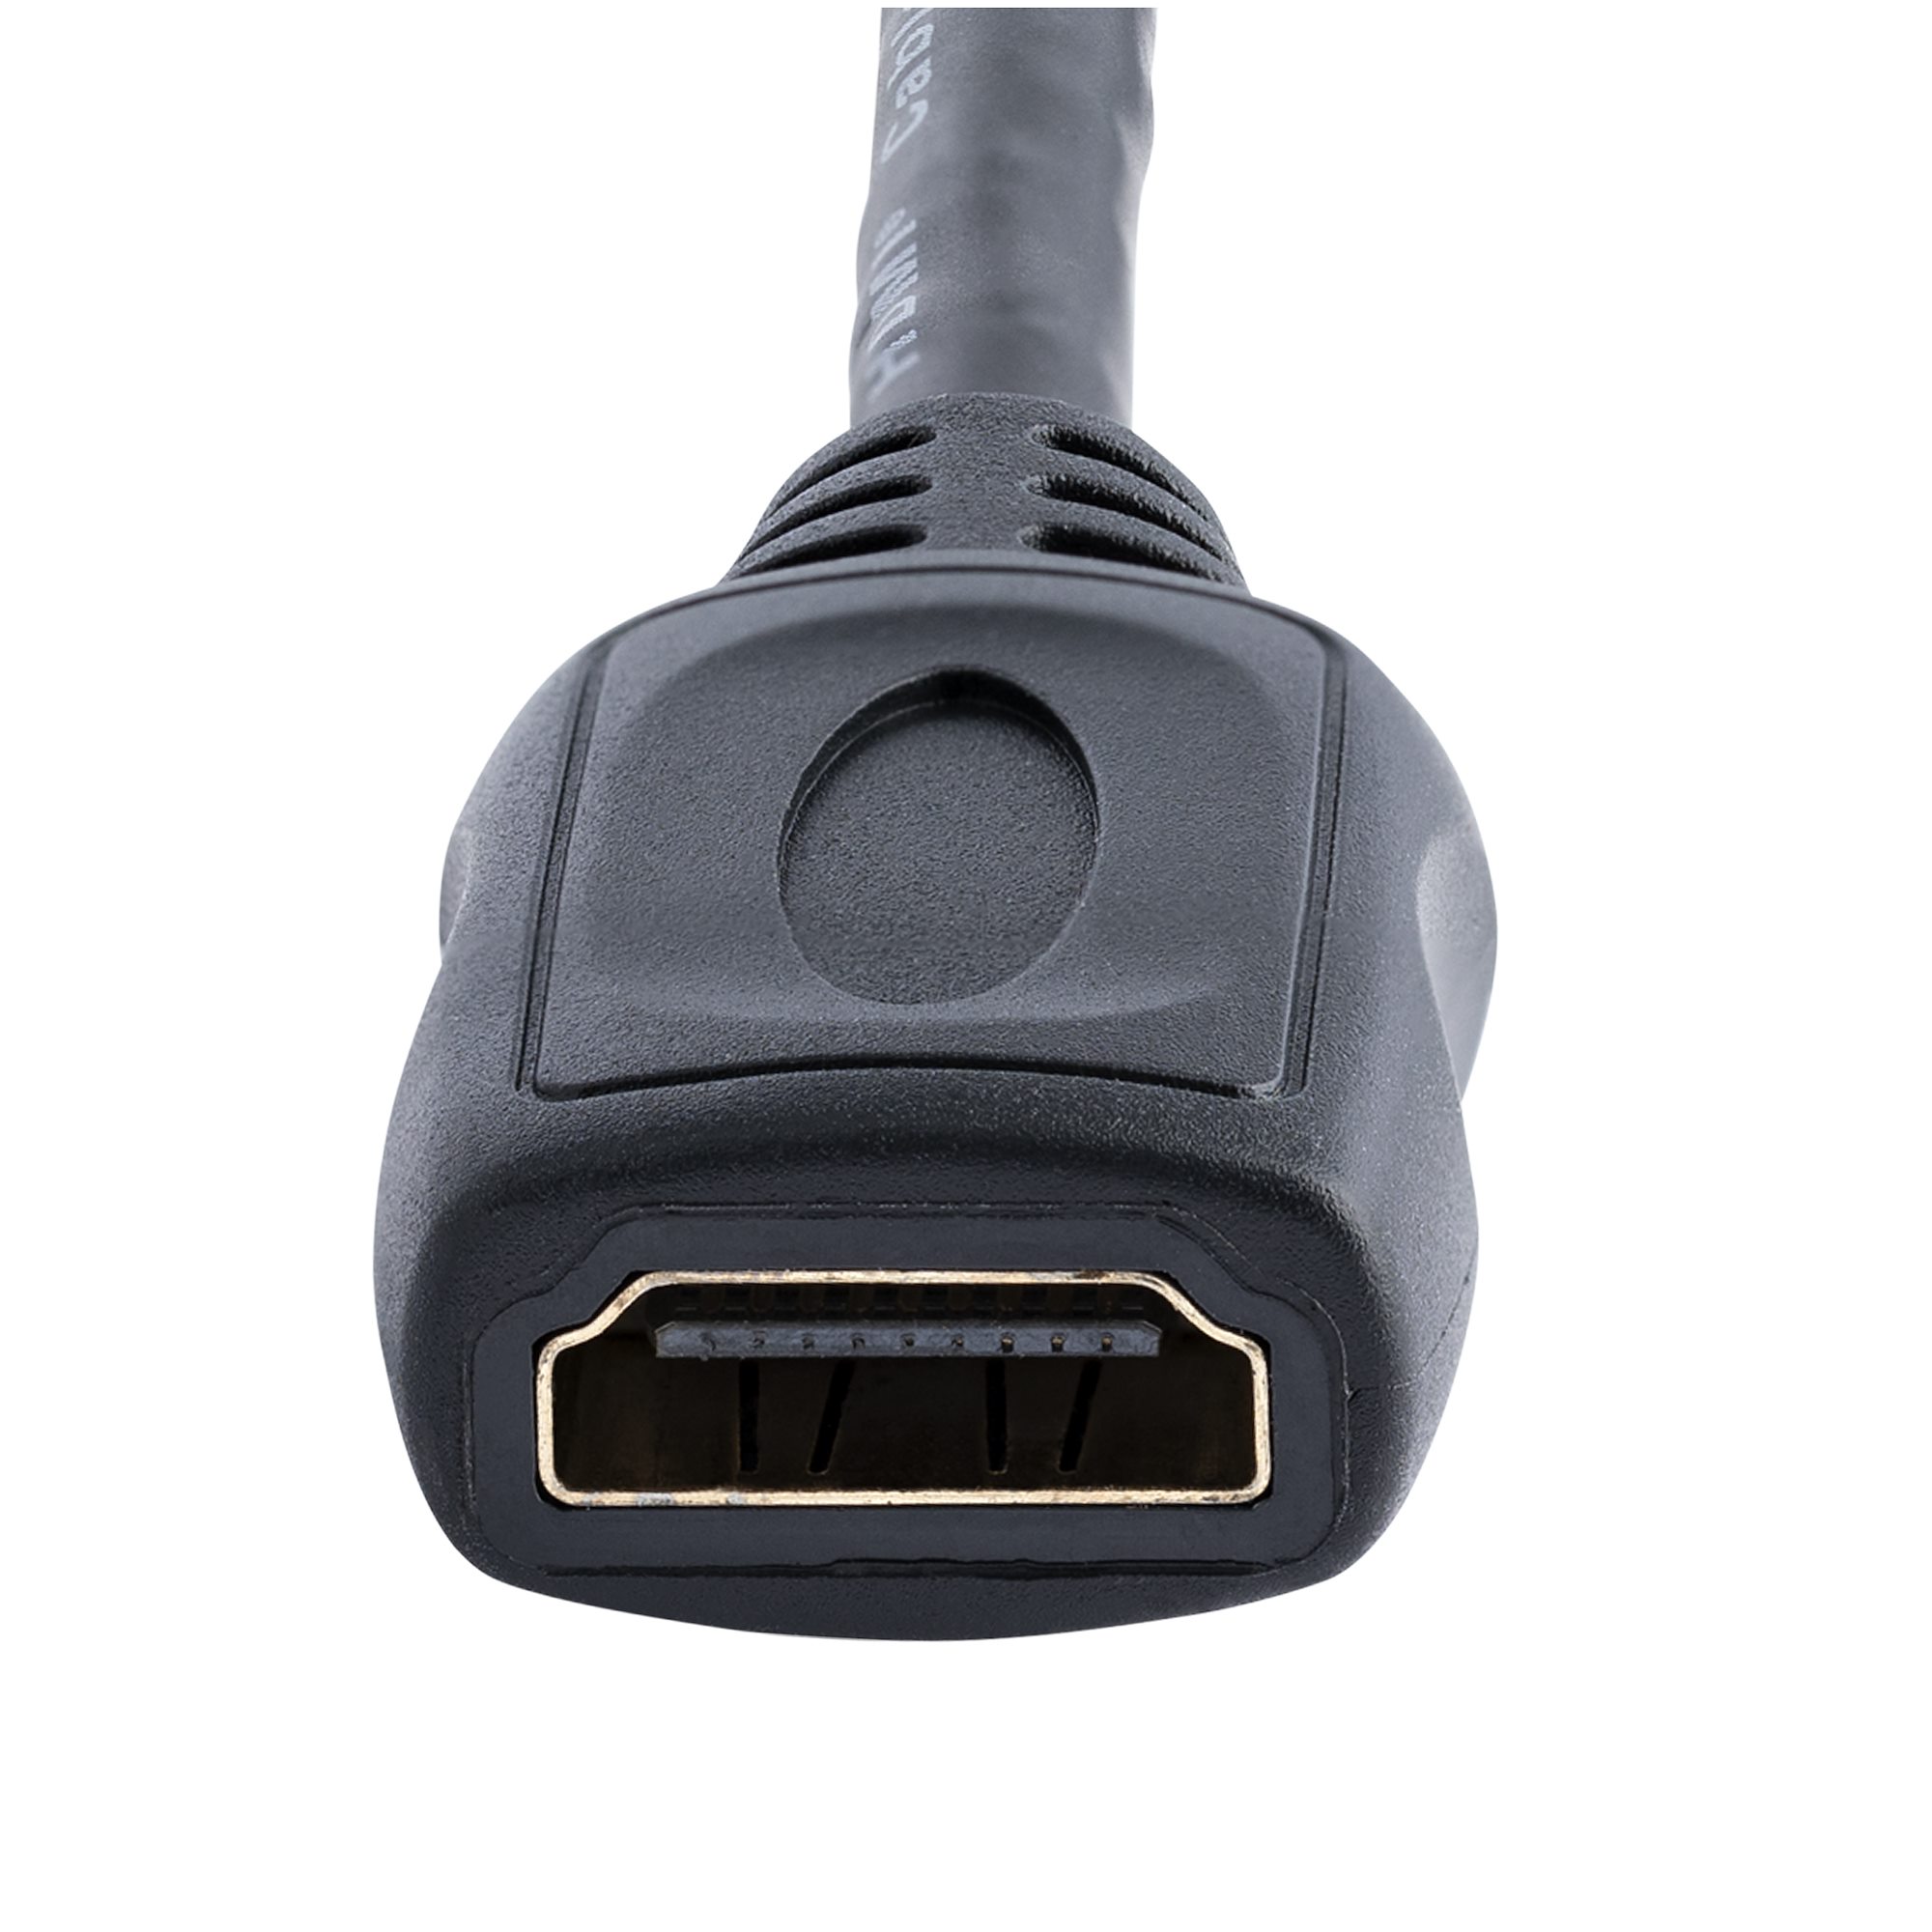  Alargador de HDMI 2.0 de alta velocidad con conexión macho a  hembra, listo para resoluciones de 4 K. Soporta 1080 p y reproductores  Blu-ray 3D, TV 3D, Roku, Boxee, Xbox360, PS3